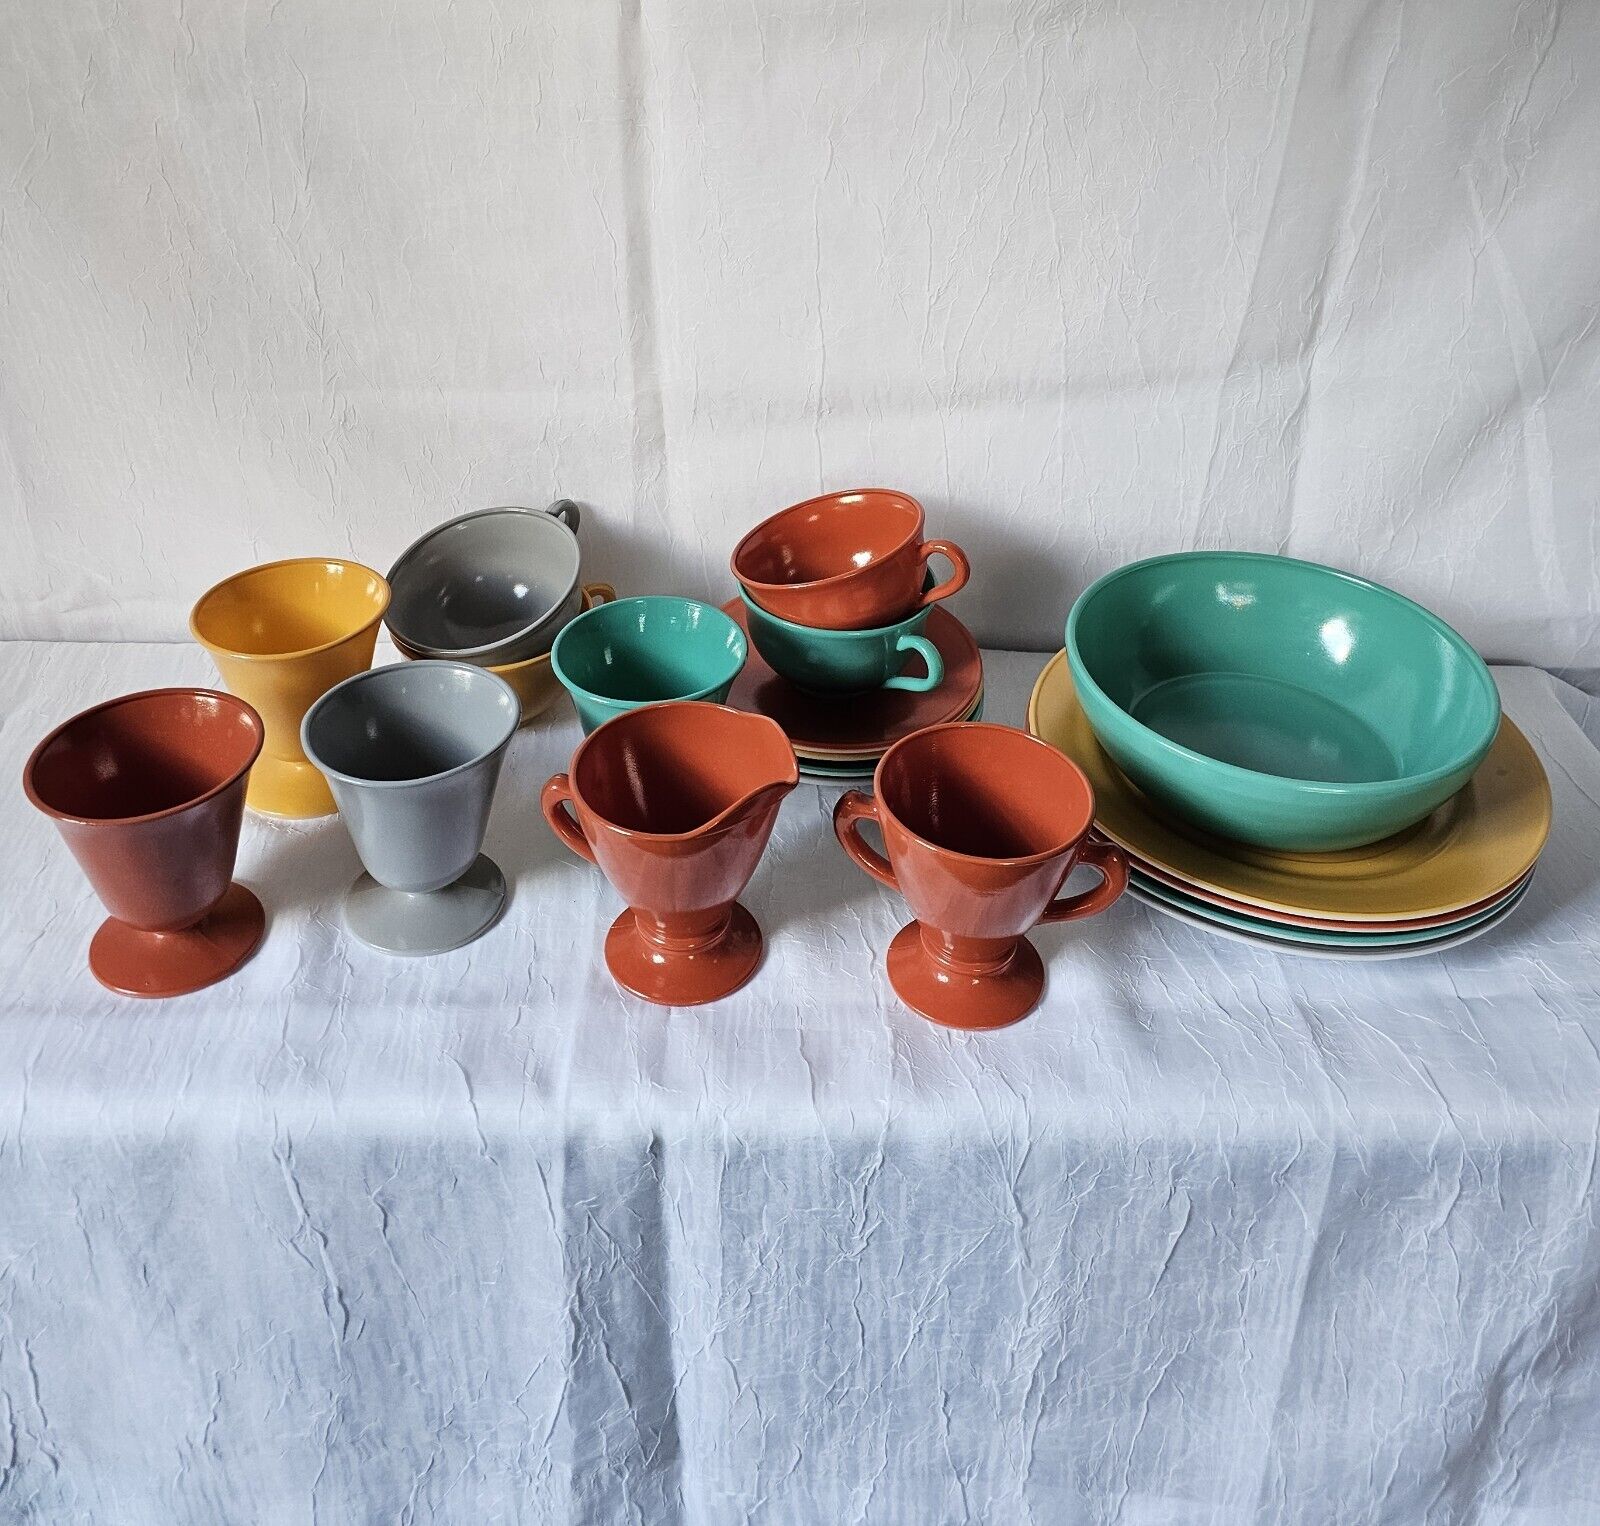 19 Pc Hazel Atlas Vintage Dishes 4 Colors Plates, Mug Tea Cup Saucer Bowl C&S